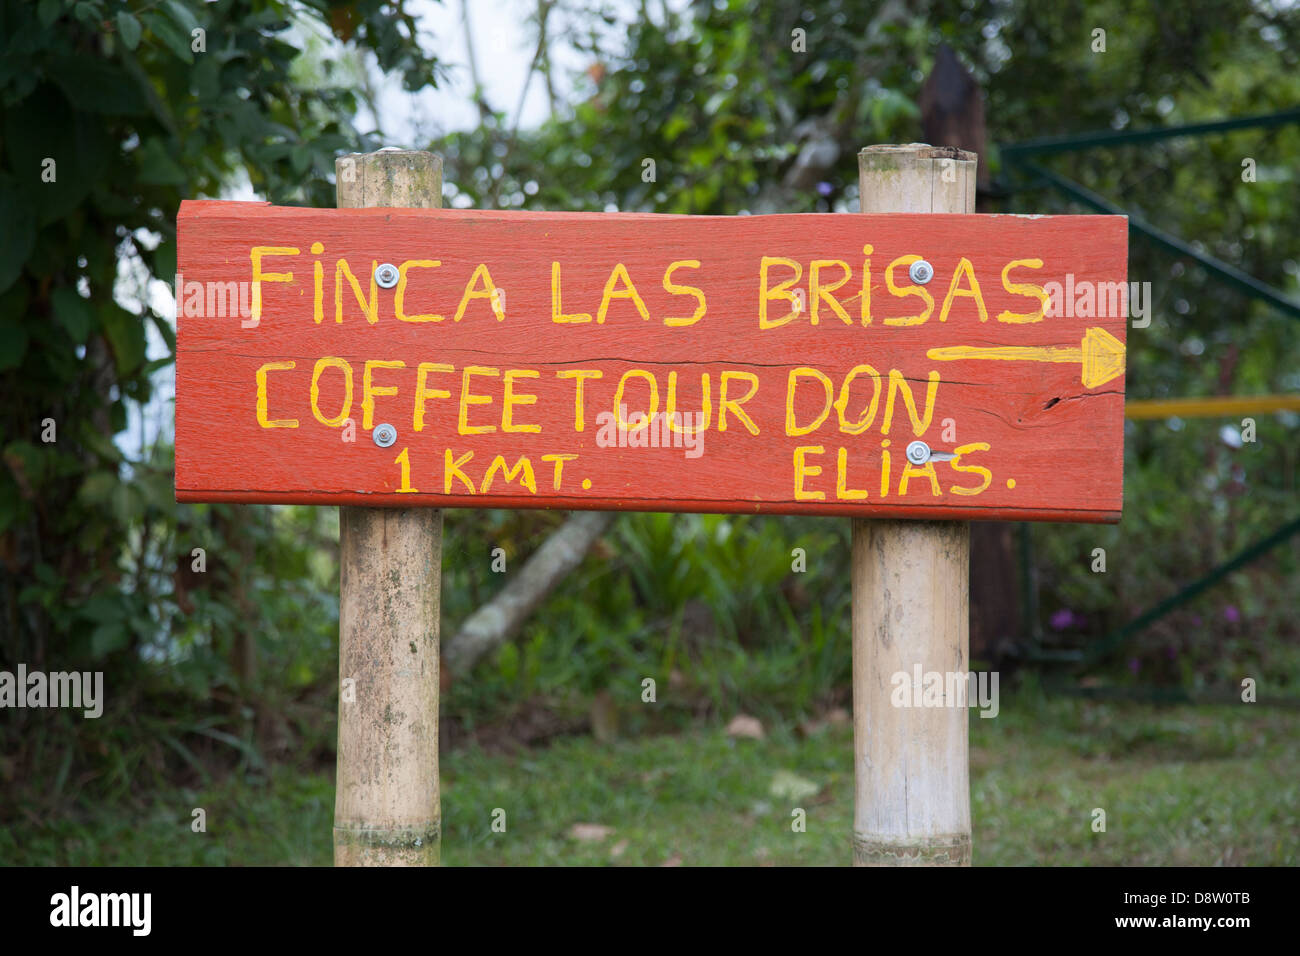 Finca las brisas sign, Coffee plantations, near Salento, Cocora Valley, Colombia Stock Photo